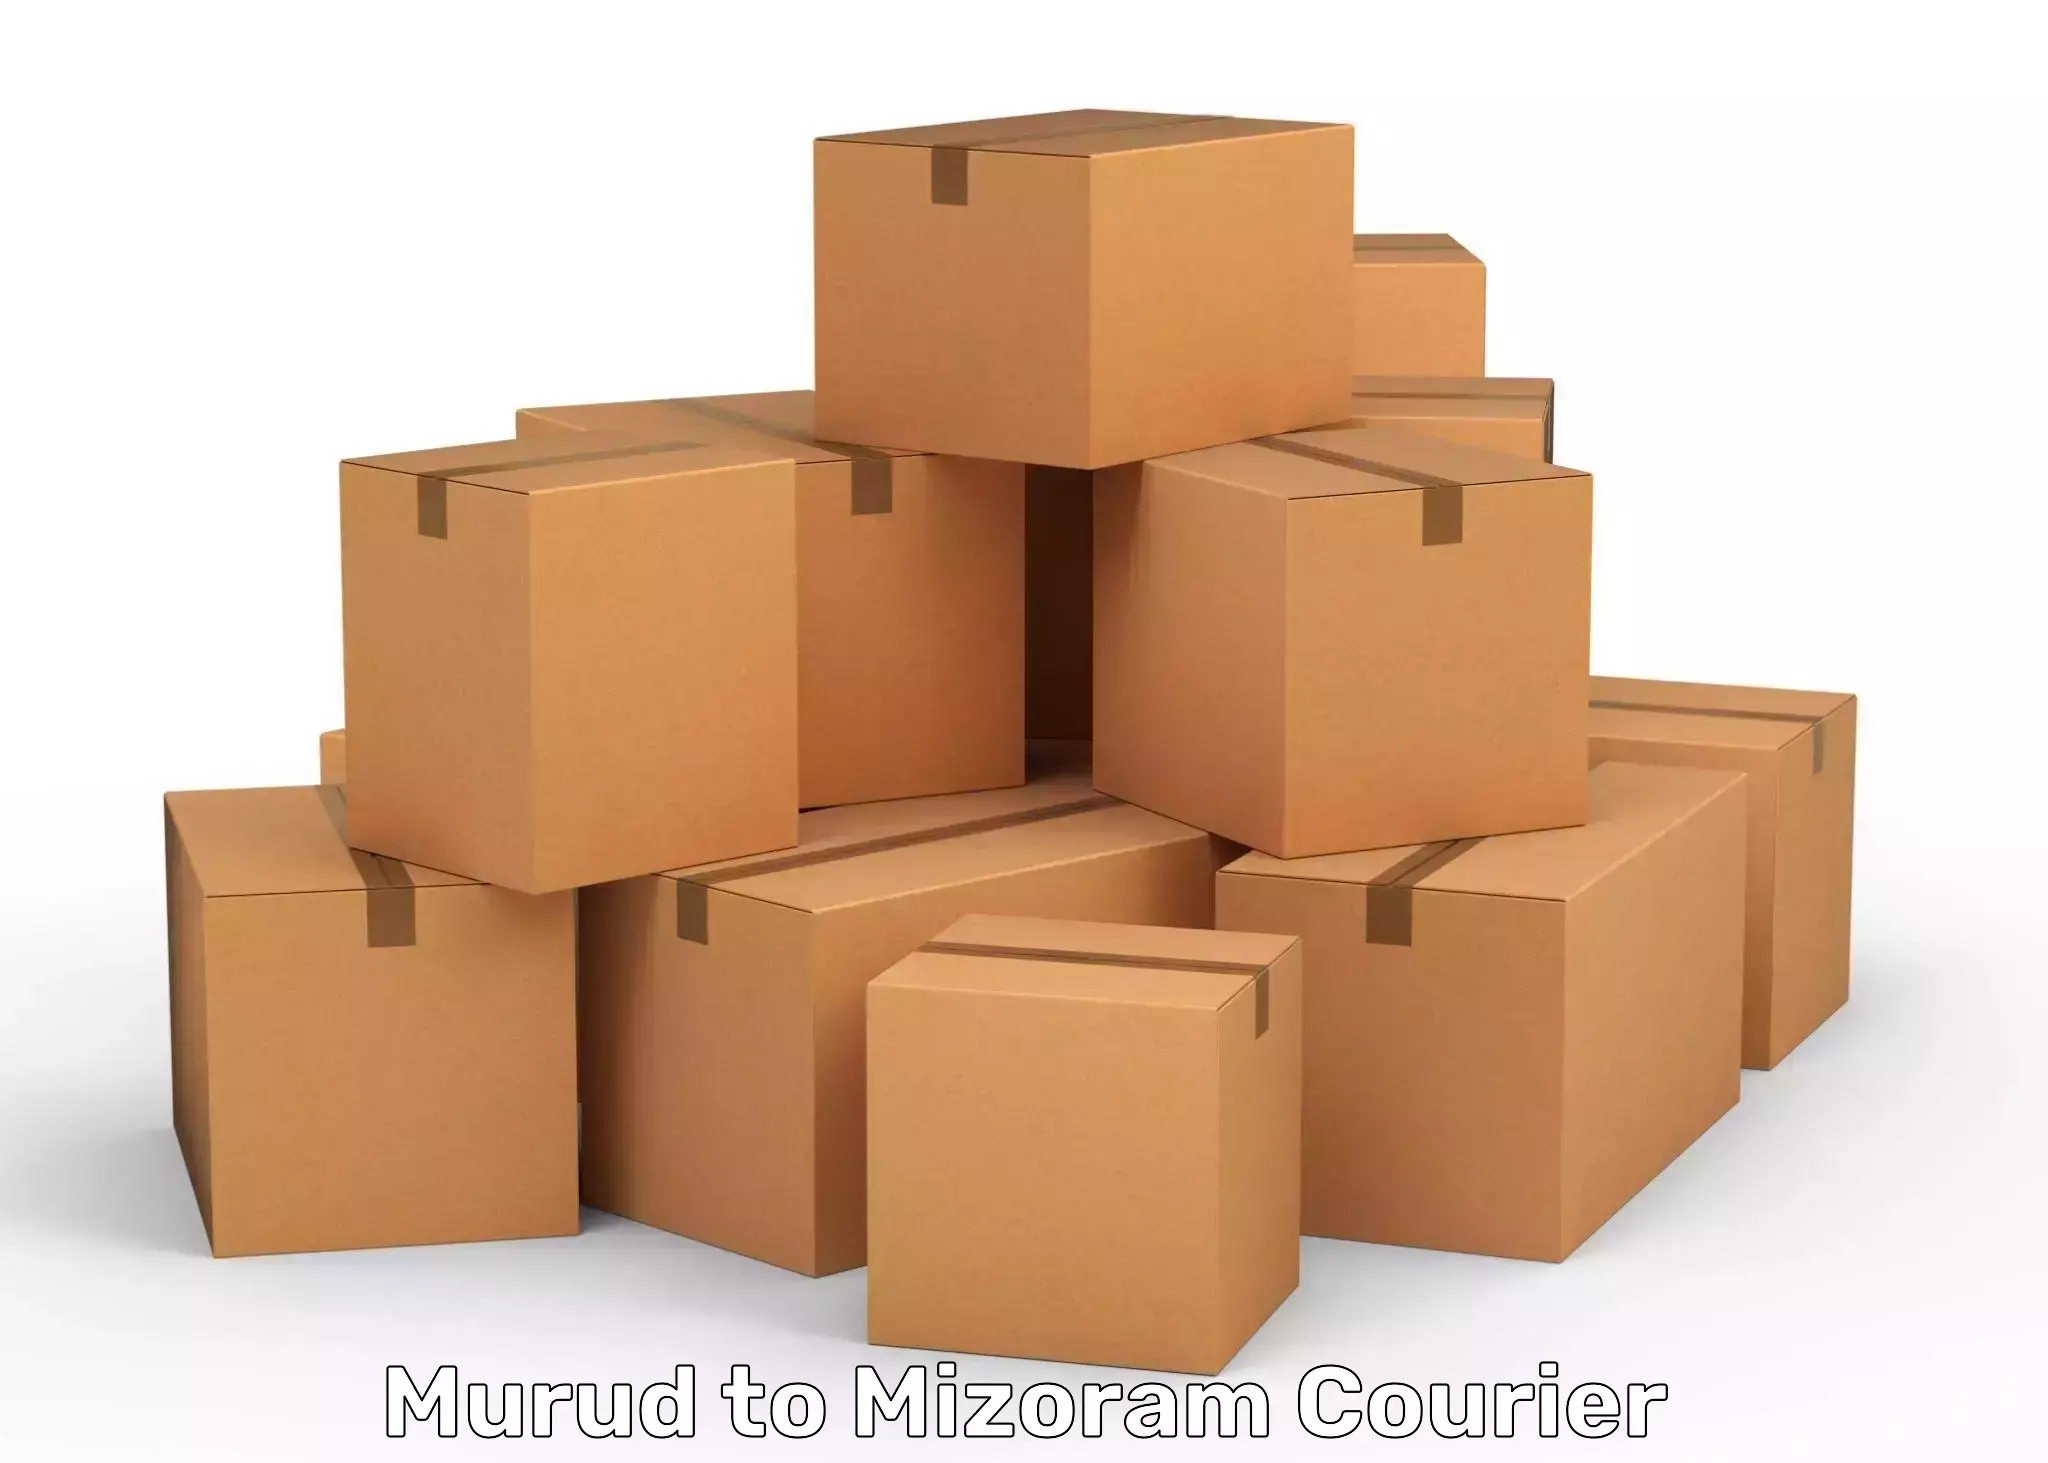 Supply chain efficiency Murud to Mizoram